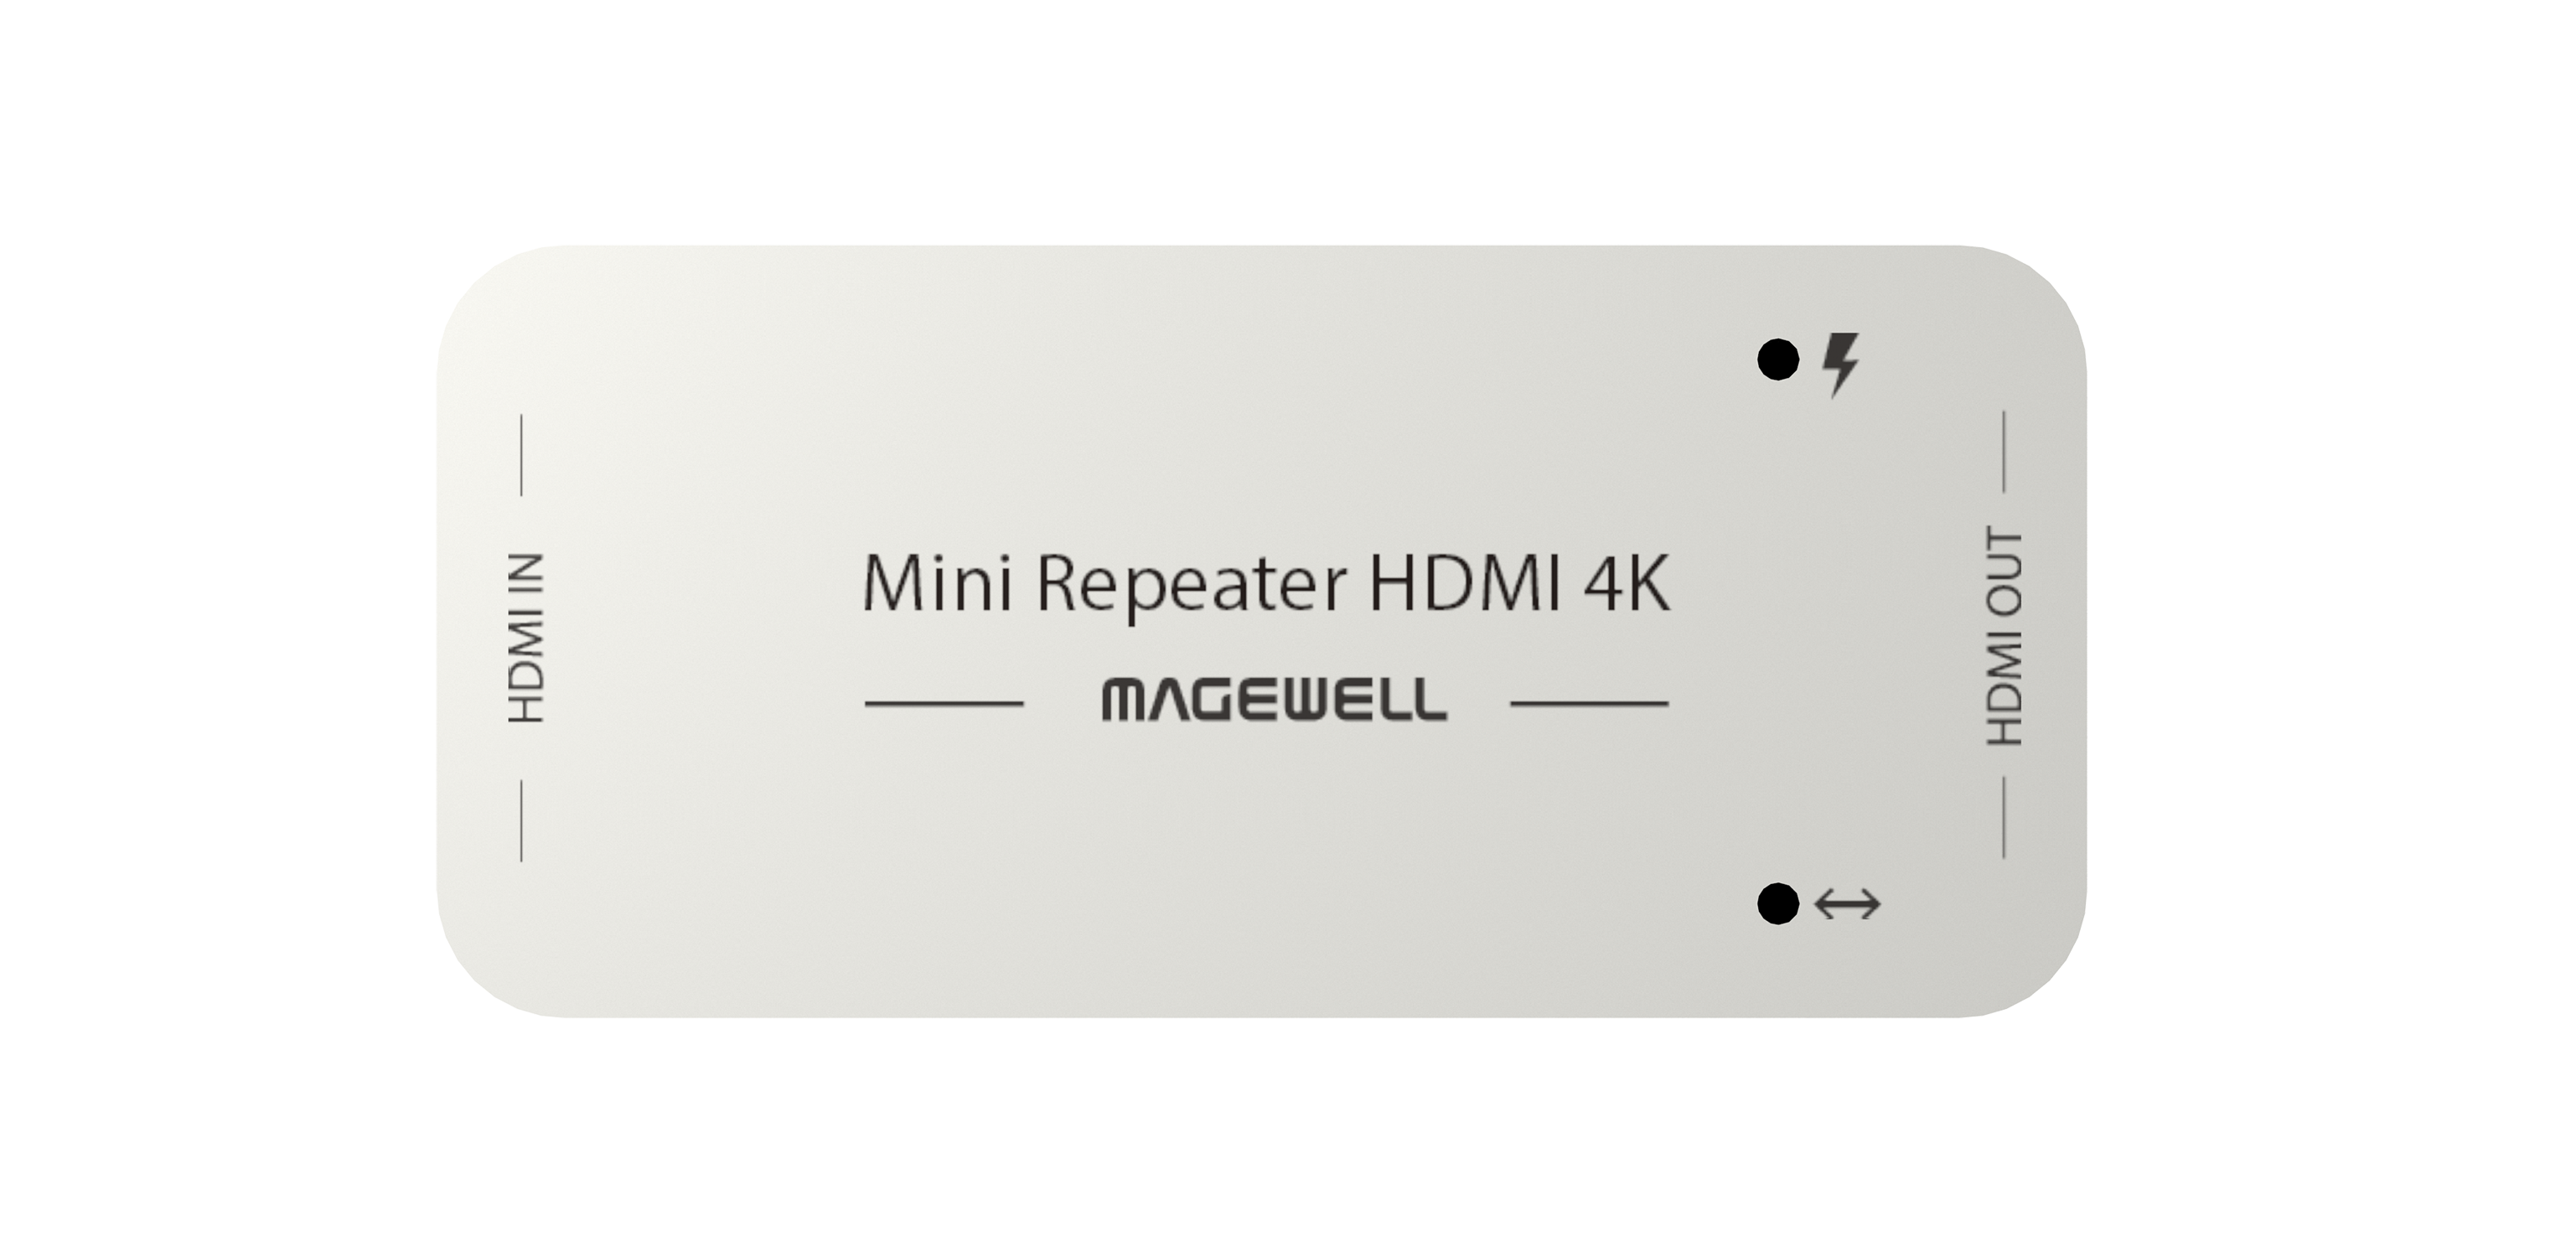 Mini Repeater HDMI 4K